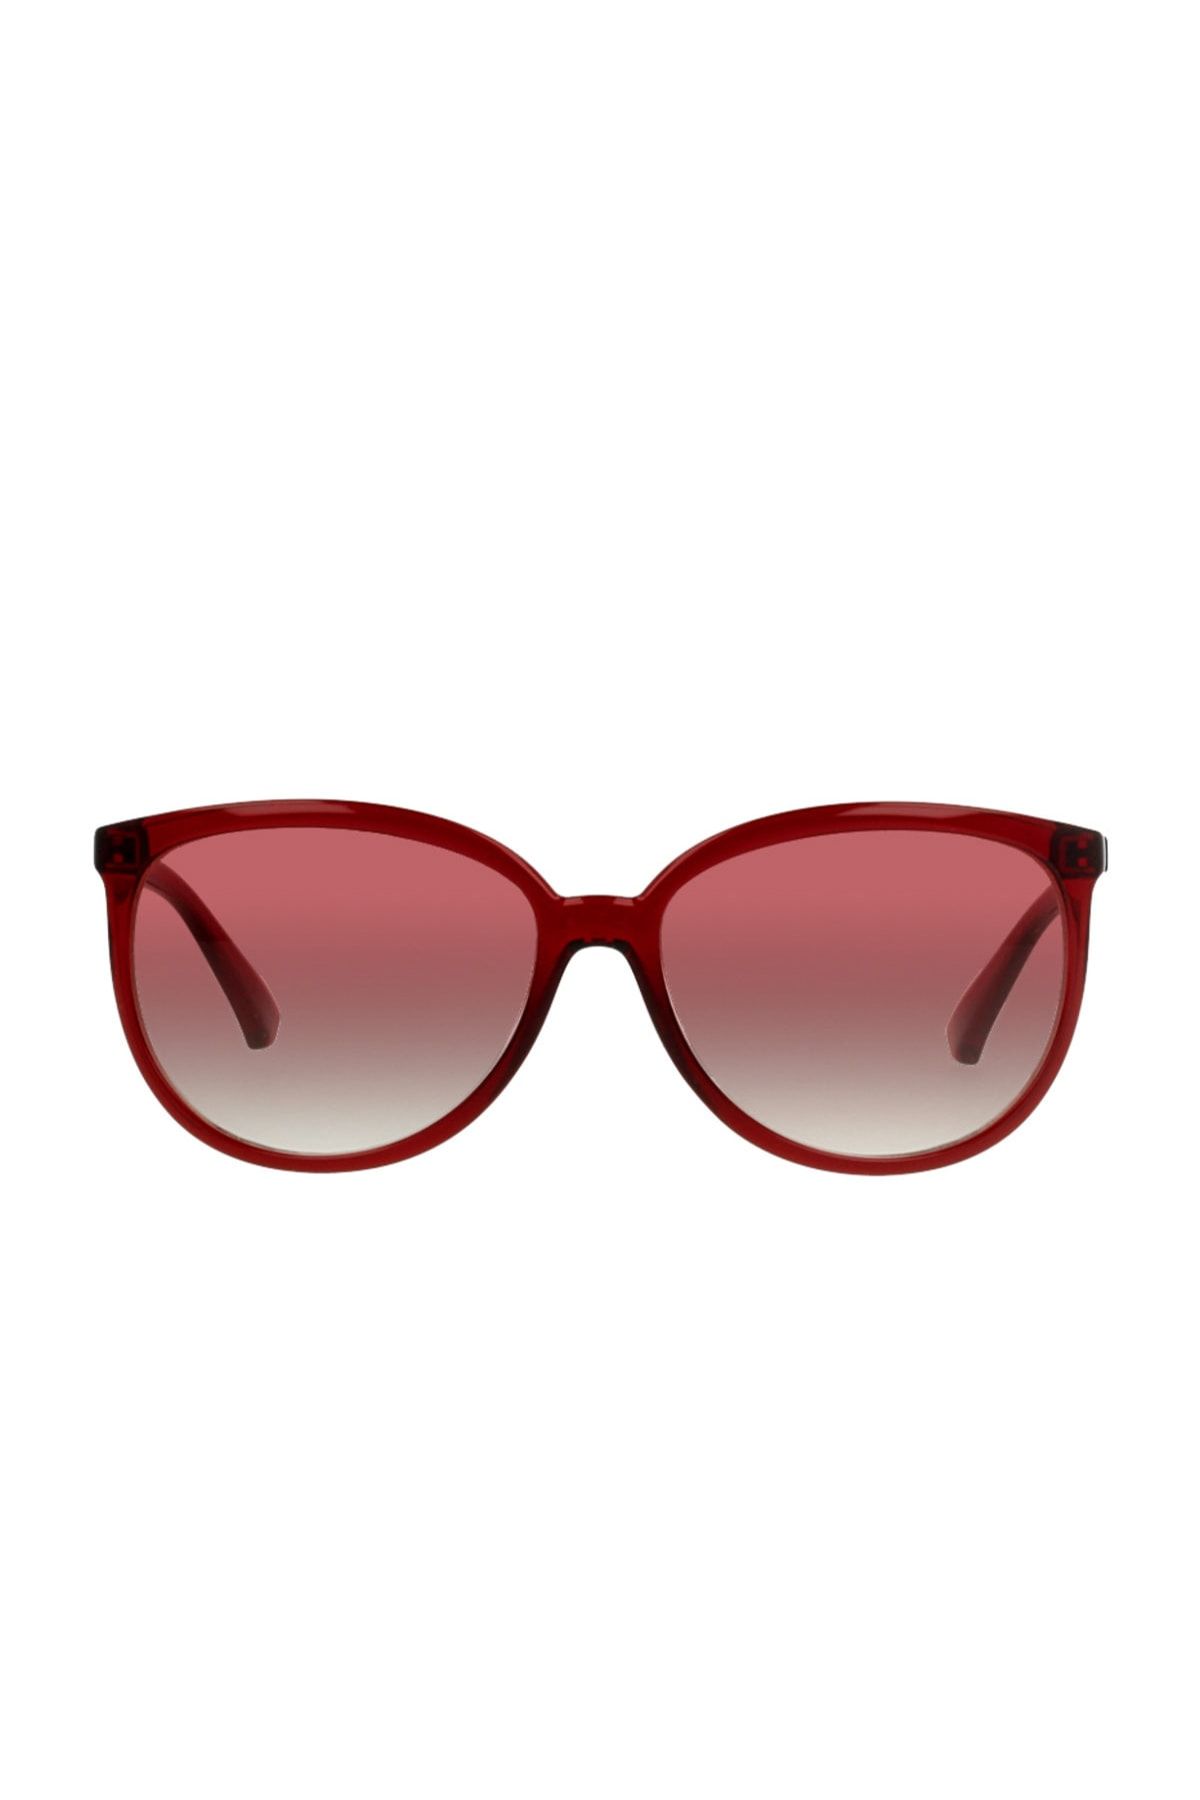 عینک دودی ترک زنانه قرمز گربه ای سایز ۵۶ برند اینستا inesta